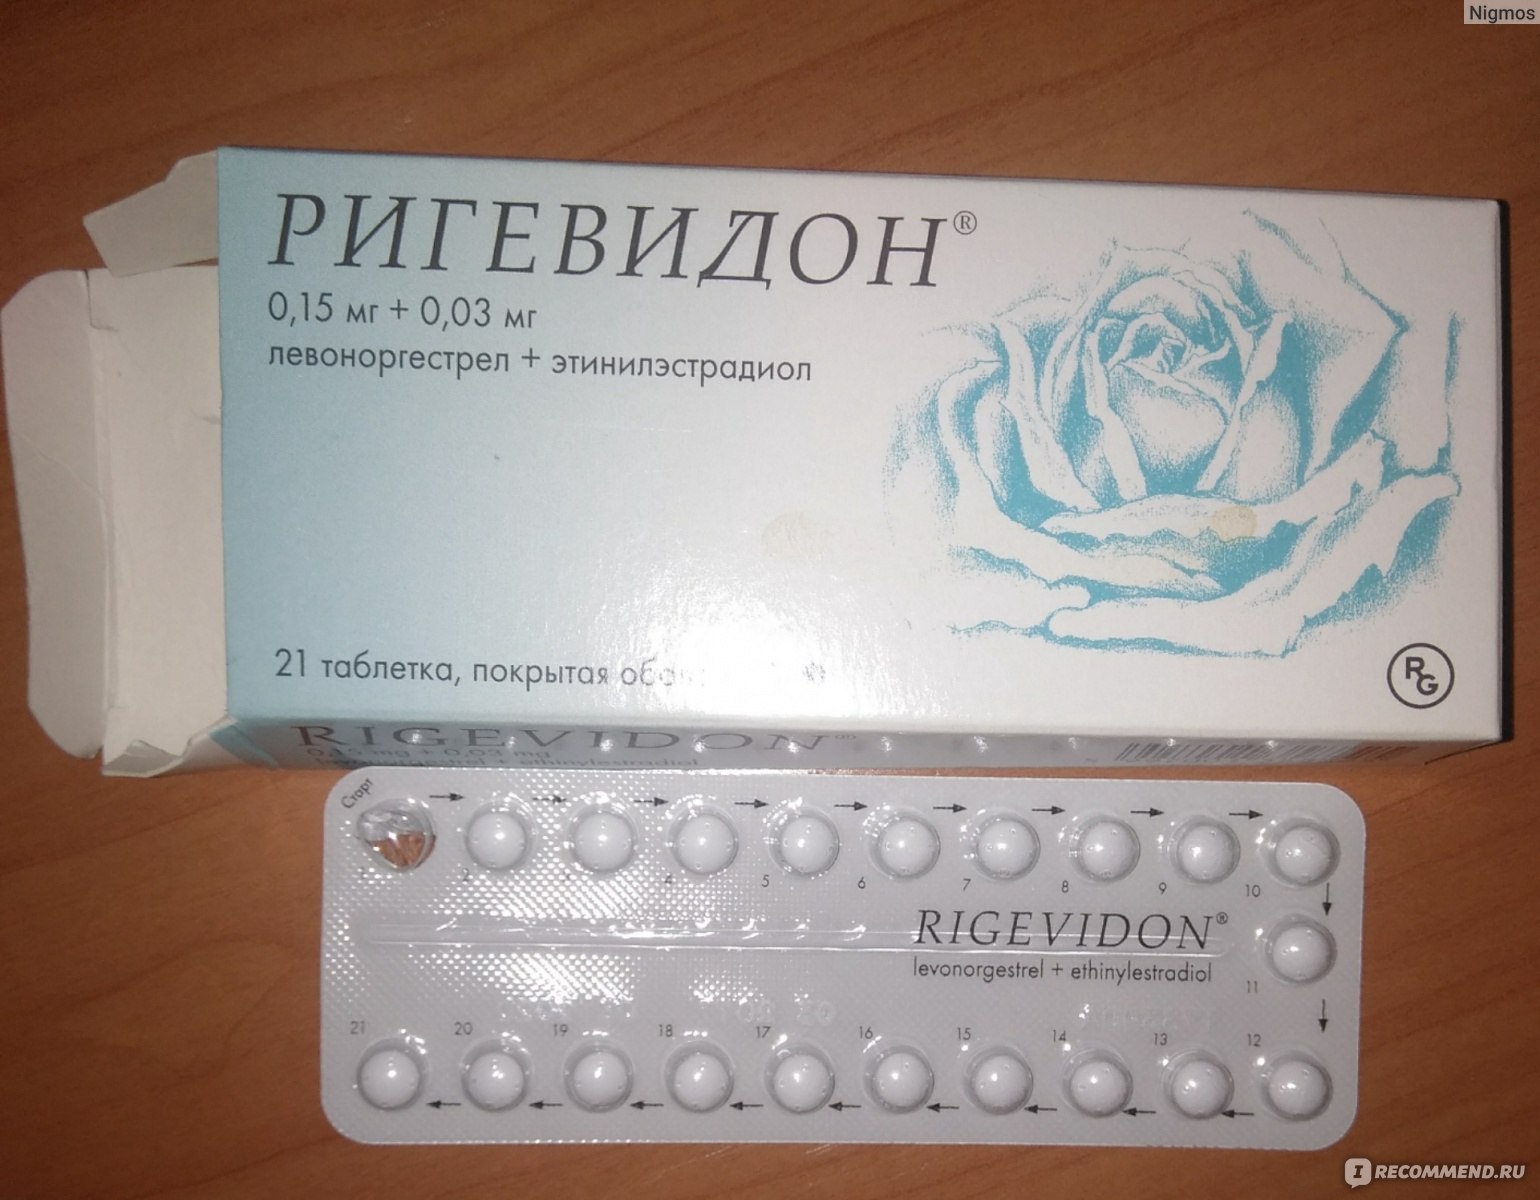 Сильные противозачаточные таблетки. Противозачаточные таблетки ригевидон. Гормональный препарат ригевидон. Противозачаточные таблетки для женщин ригевидон. Таблетки противозачаточные реговидон.